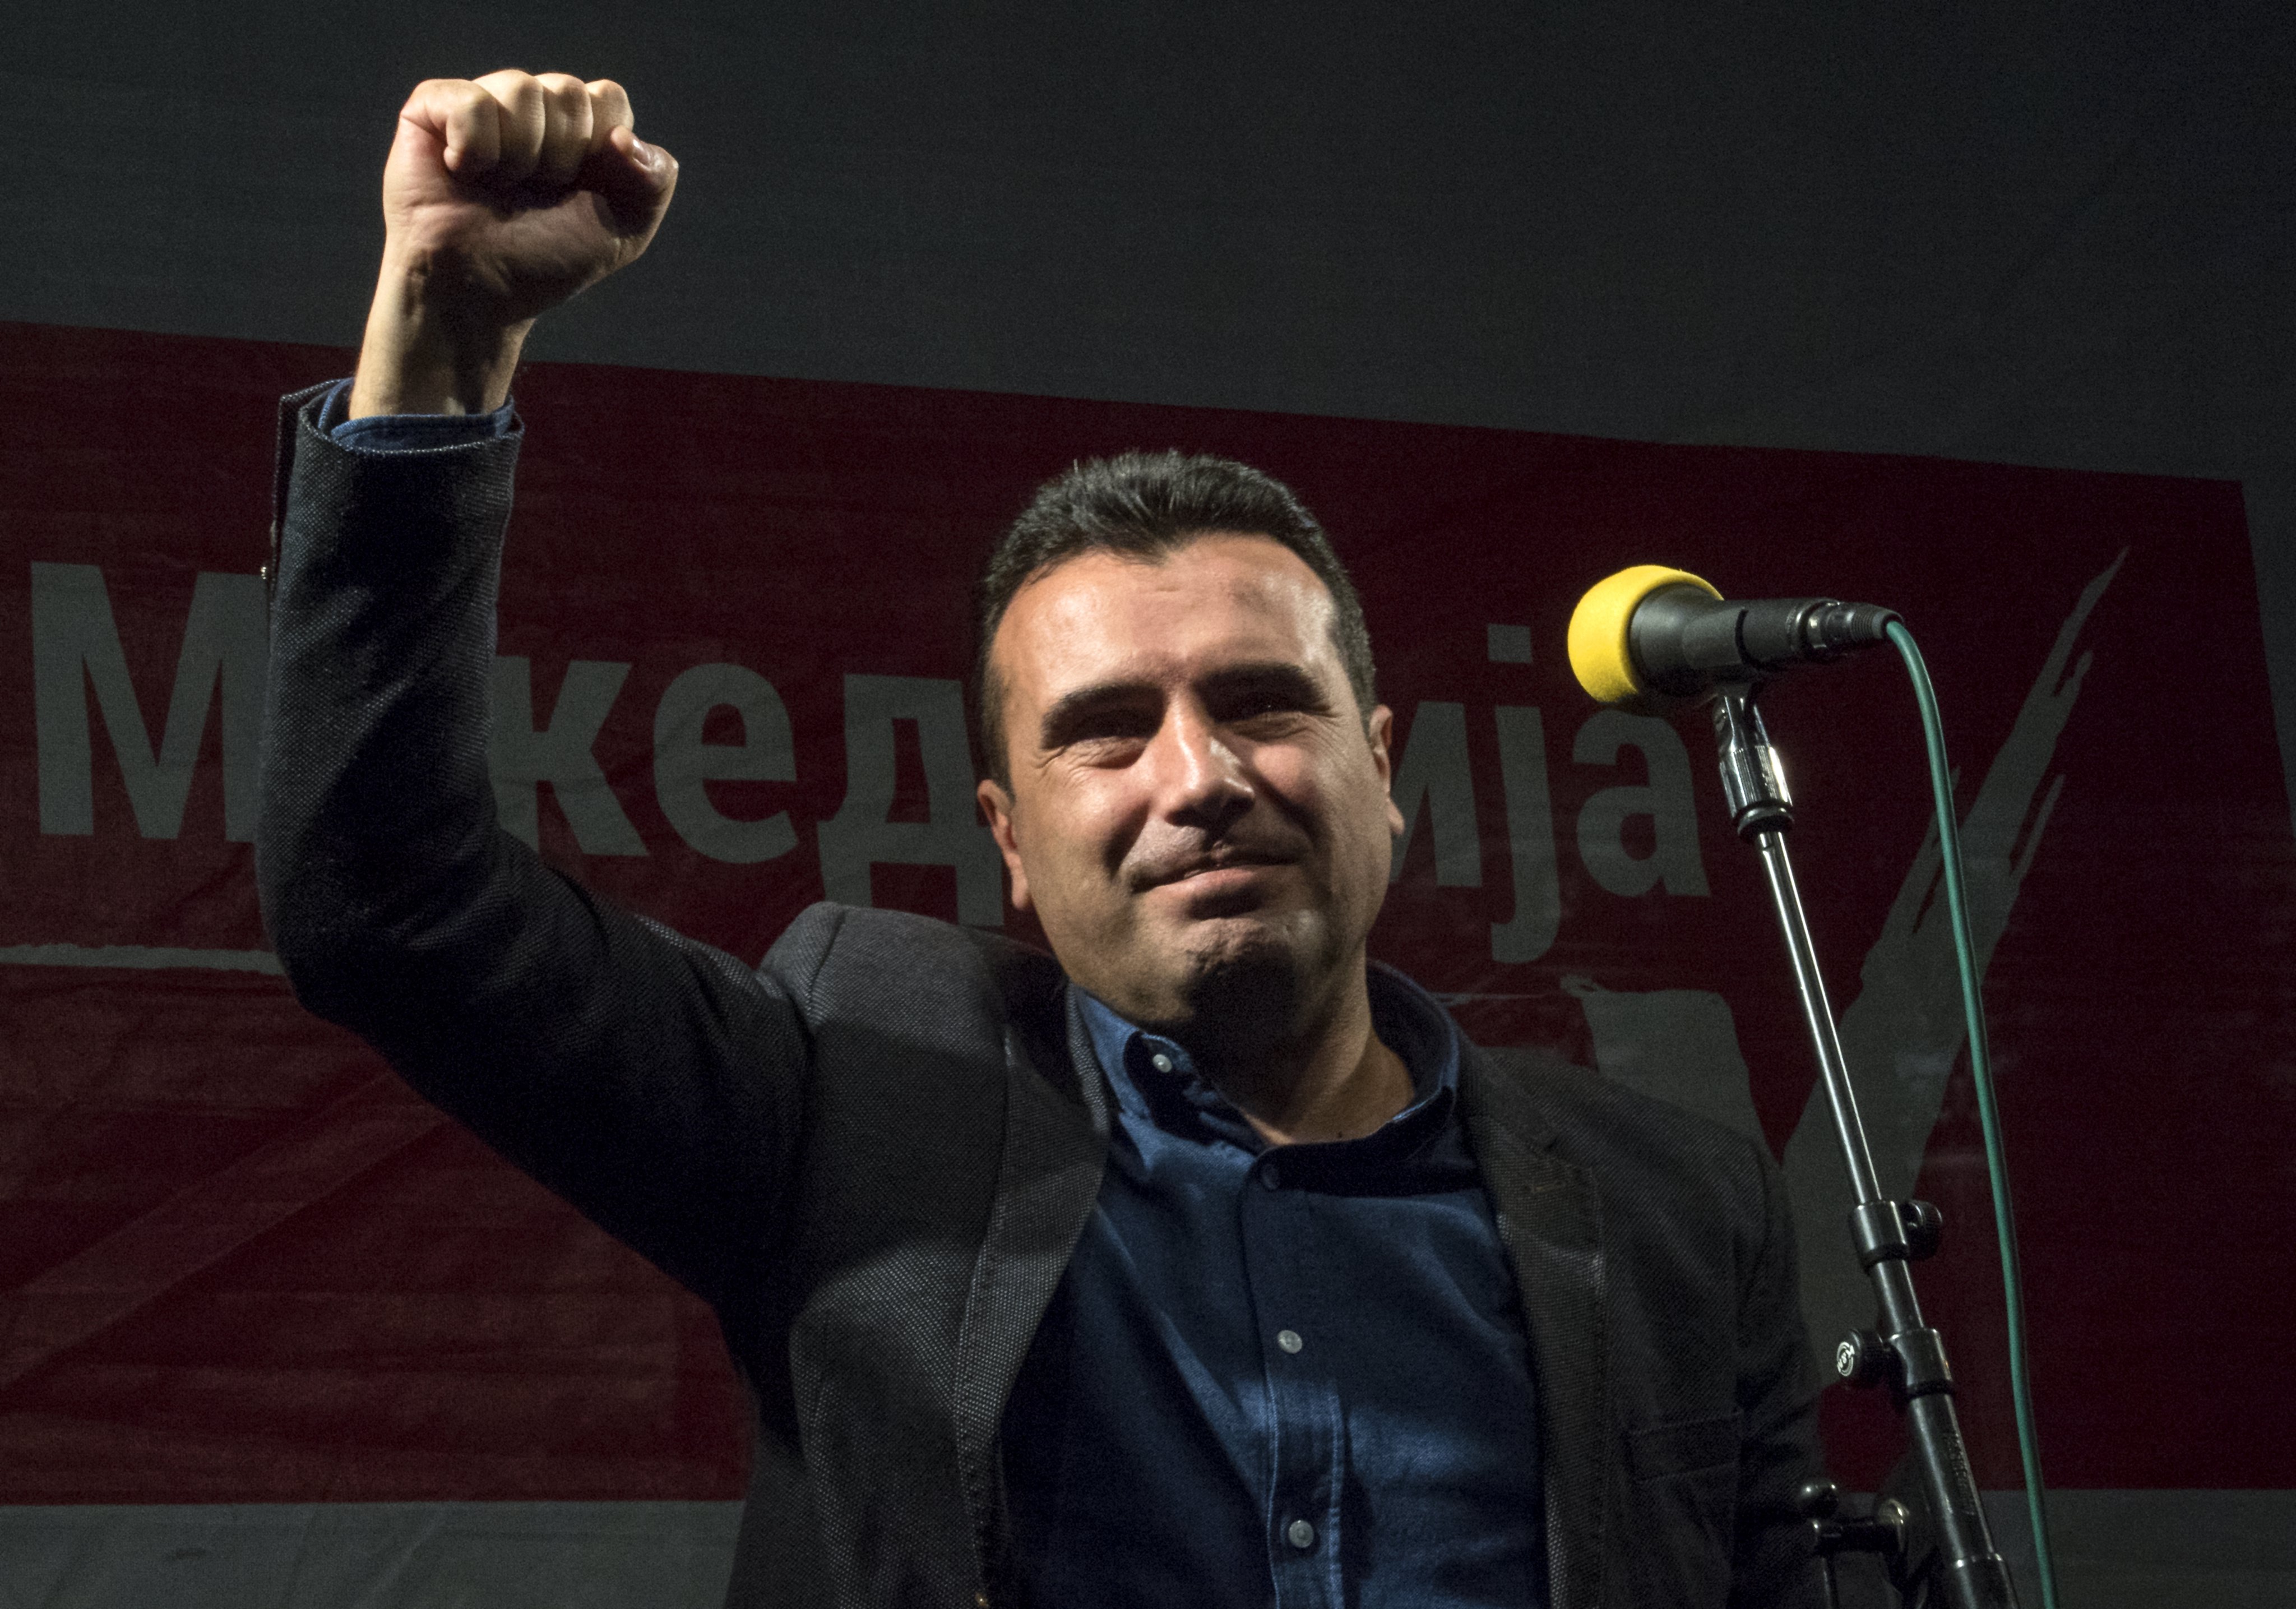 ΠΓΔΜ: Το κόμμα του Ζάεφ νικητής των δημοτικών εκλογών